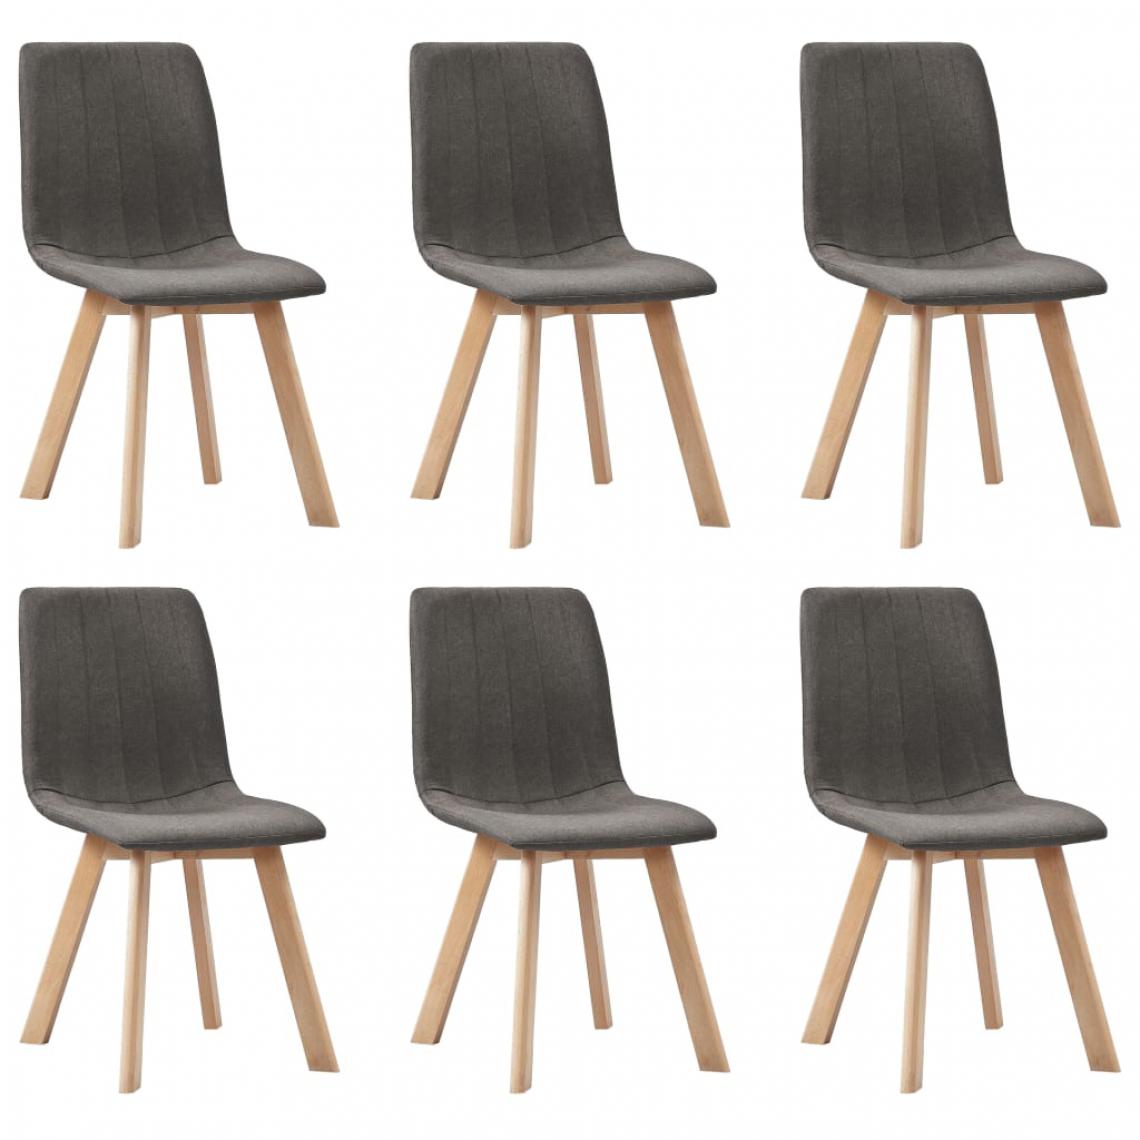 Icaverne - Contemporain Fauteuils et chaises serie Malabo Chaises de salle à manger 6 pcs Taupe Tissu - Chaises